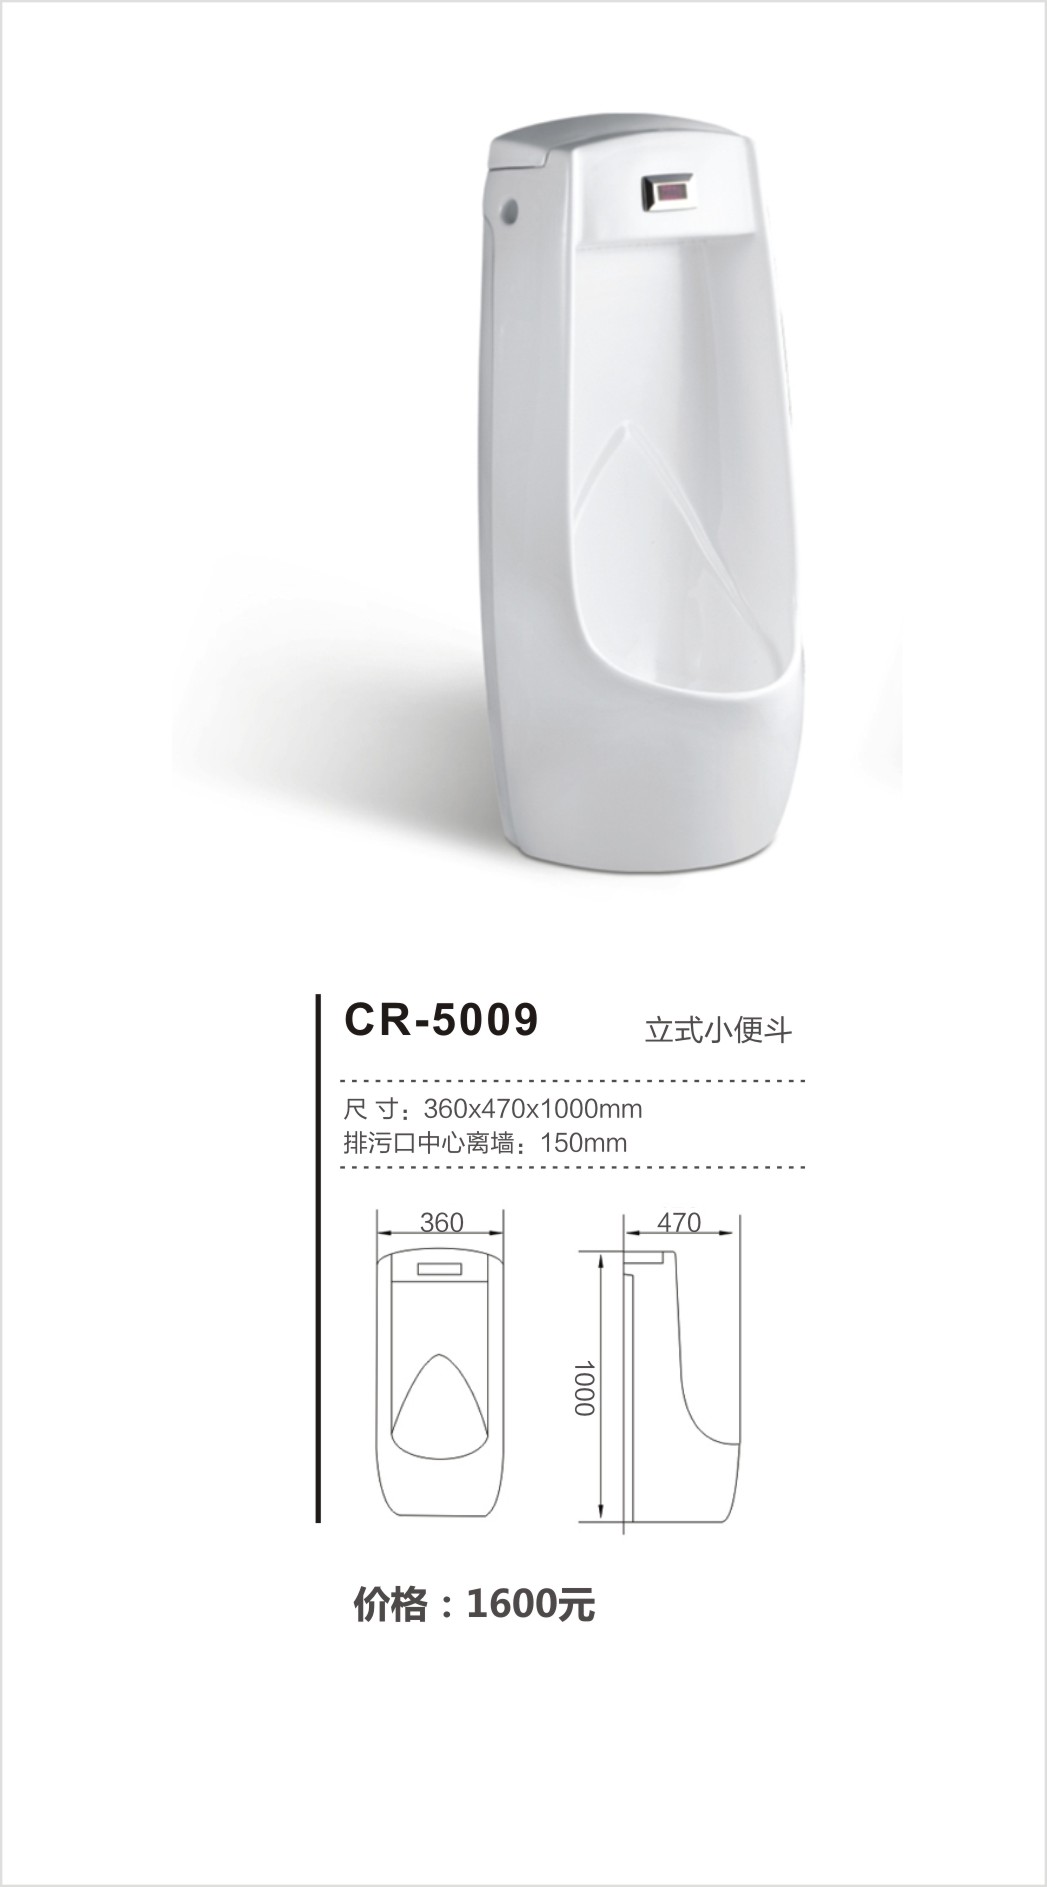 超人（chaoren）卫浴系列尿斗CR-5009